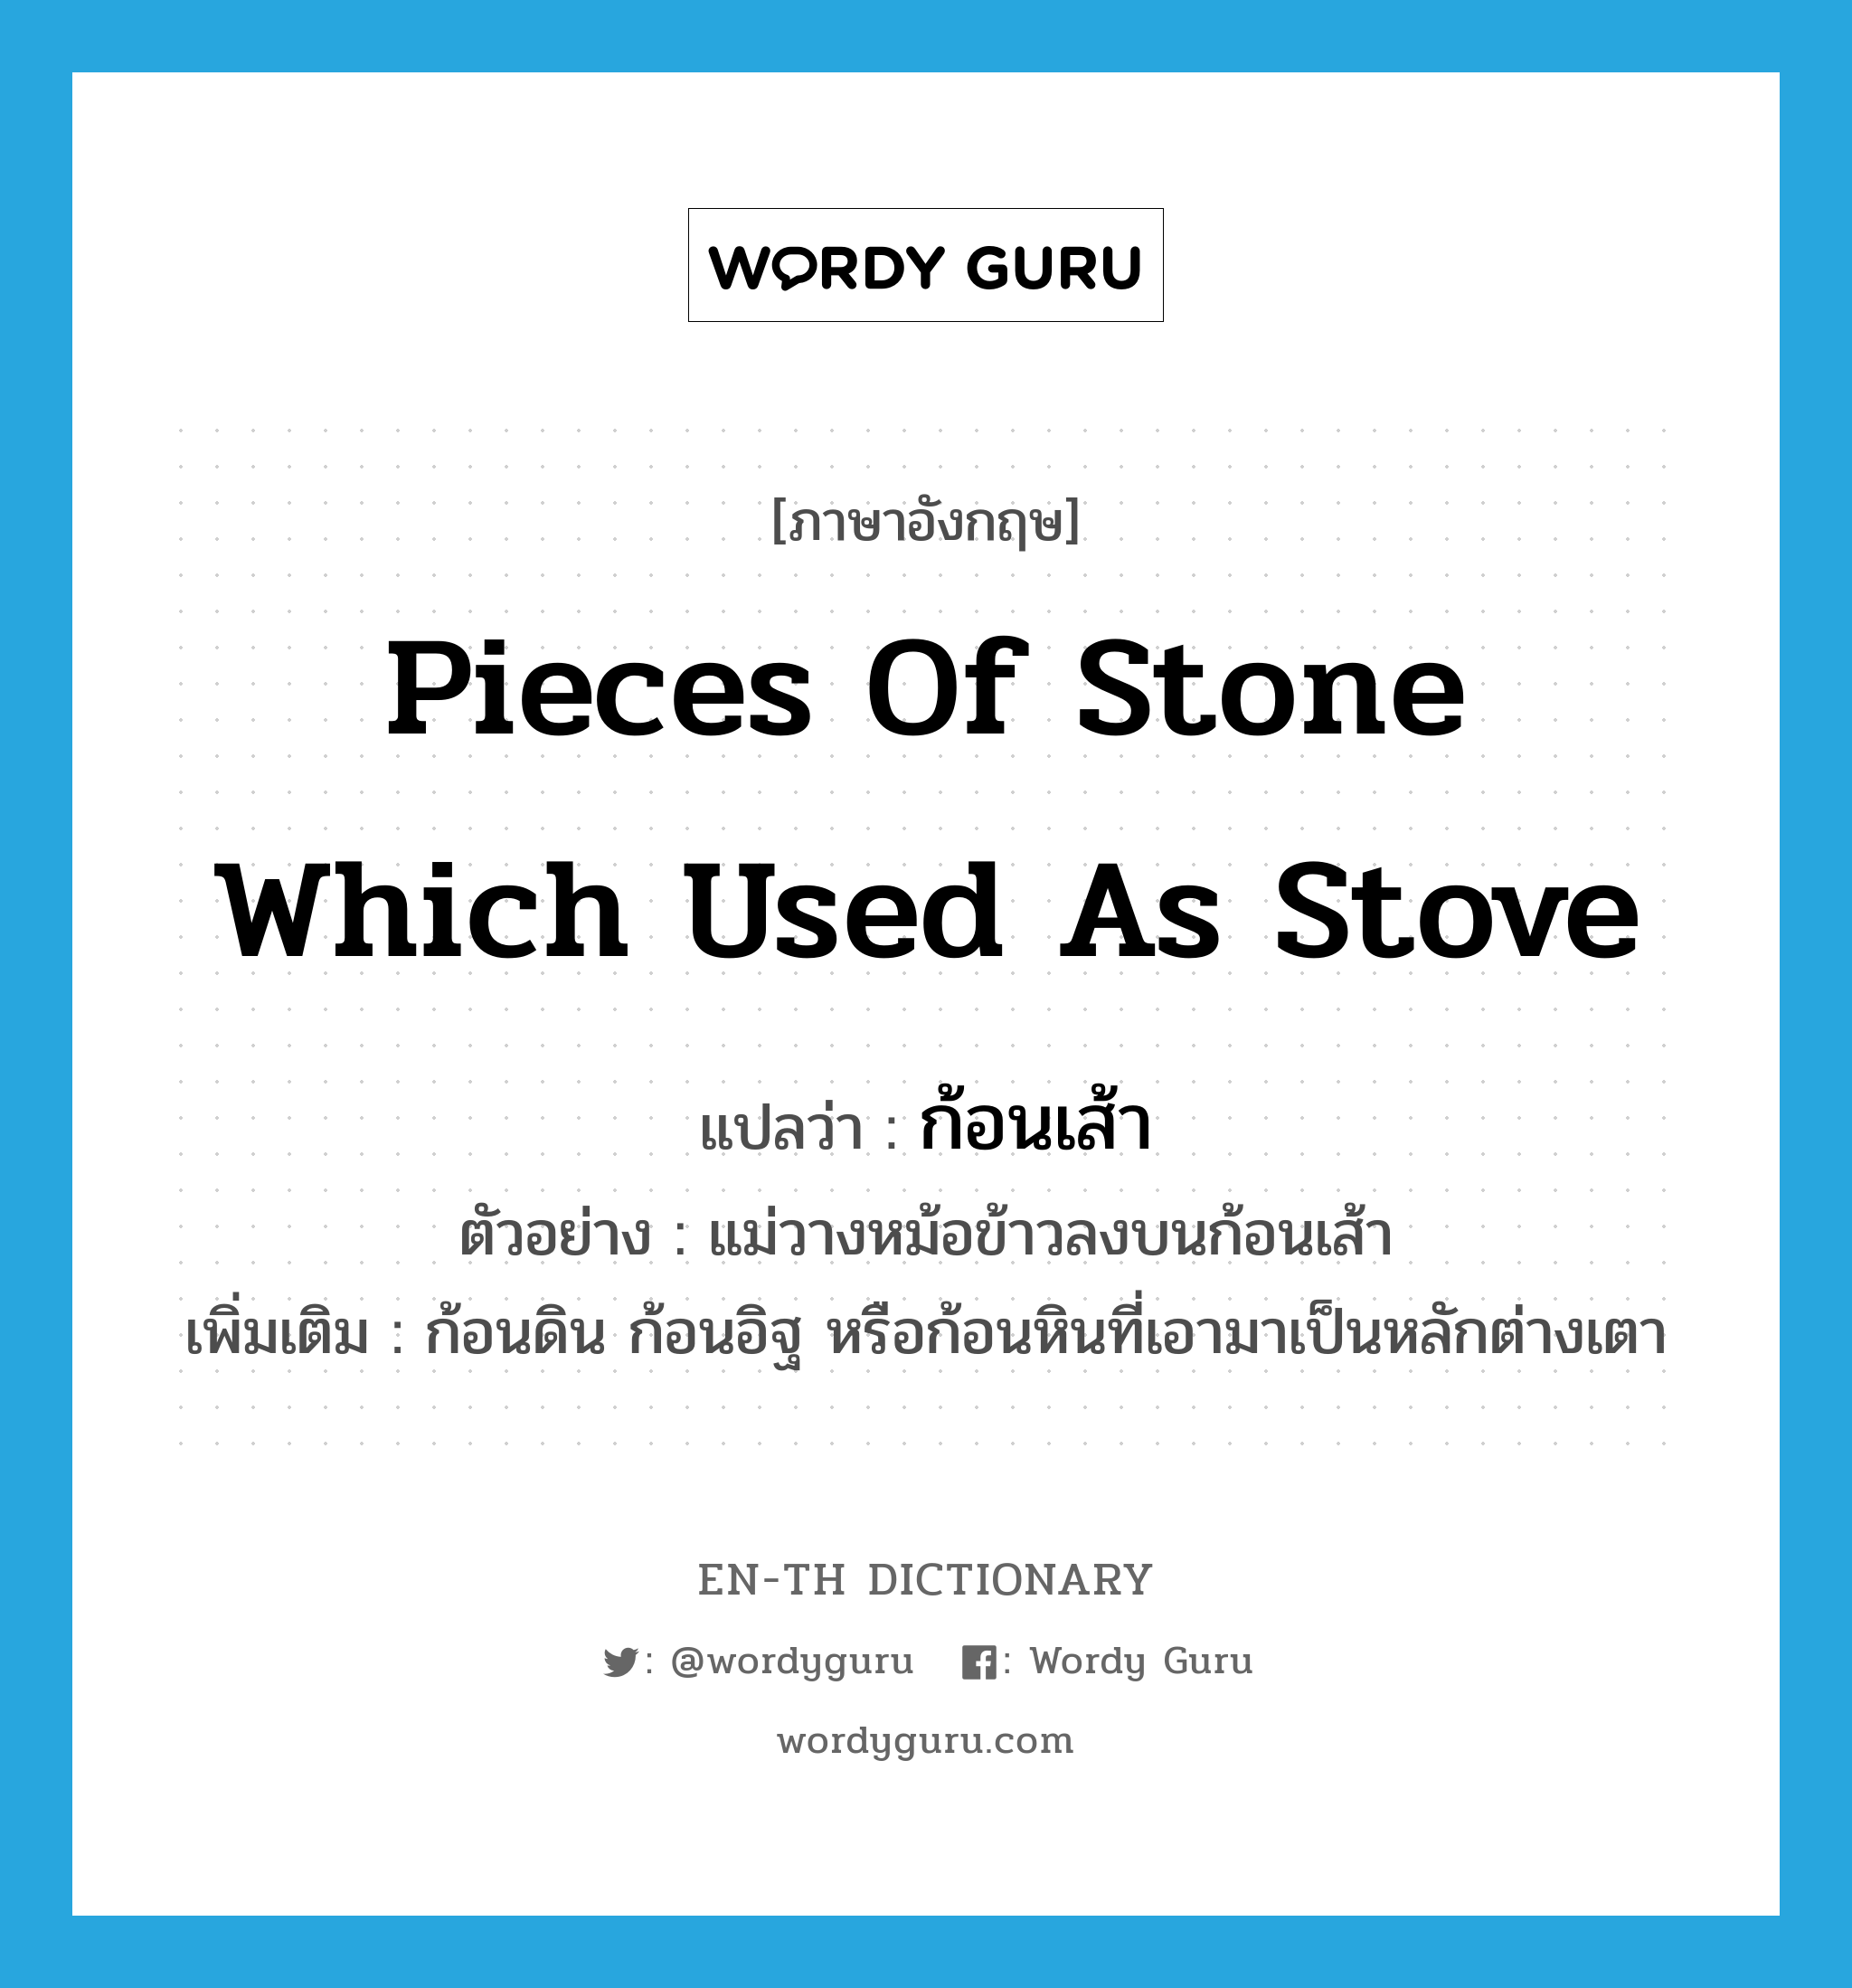 pieces of stone which used as stove แปลว่า?, คำศัพท์ภาษาอังกฤษ pieces of stone which used as stove แปลว่า ก้อนเส้า ประเภท N ตัวอย่าง แม่วางหม้อข้าวลงบนก้อนเส้า เพิ่มเติม ก้อนดิน ก้อนอิฐ หรือก้อนหินที่เอามาเป็นหลักต่างเตา หมวด N